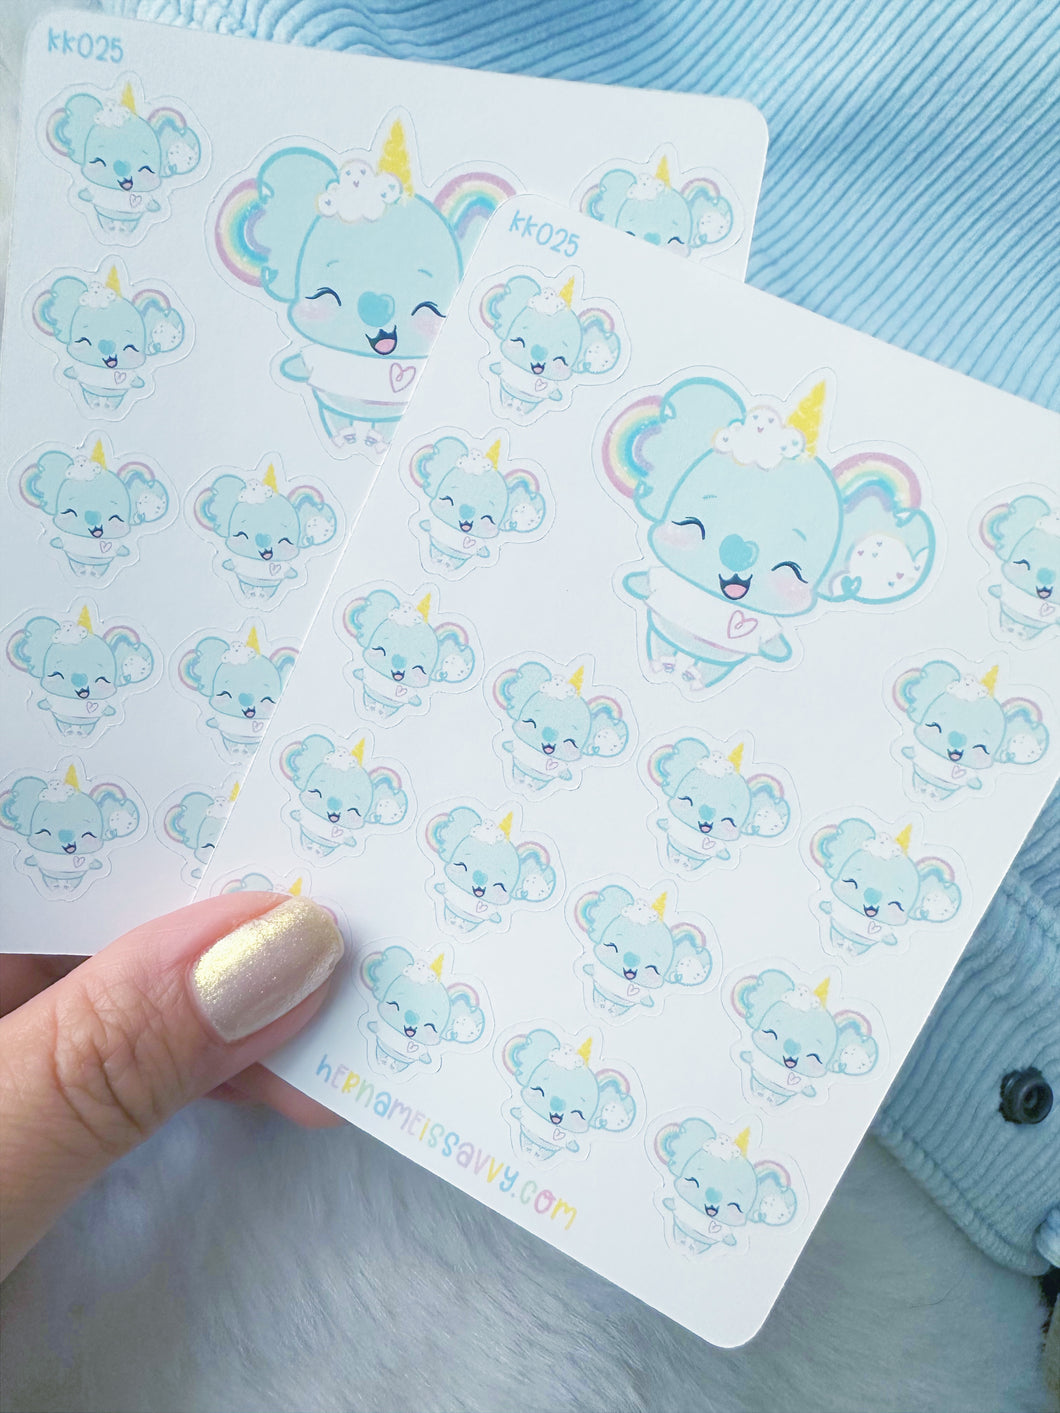 KK025 - Magical Kohei Sticker Sheet